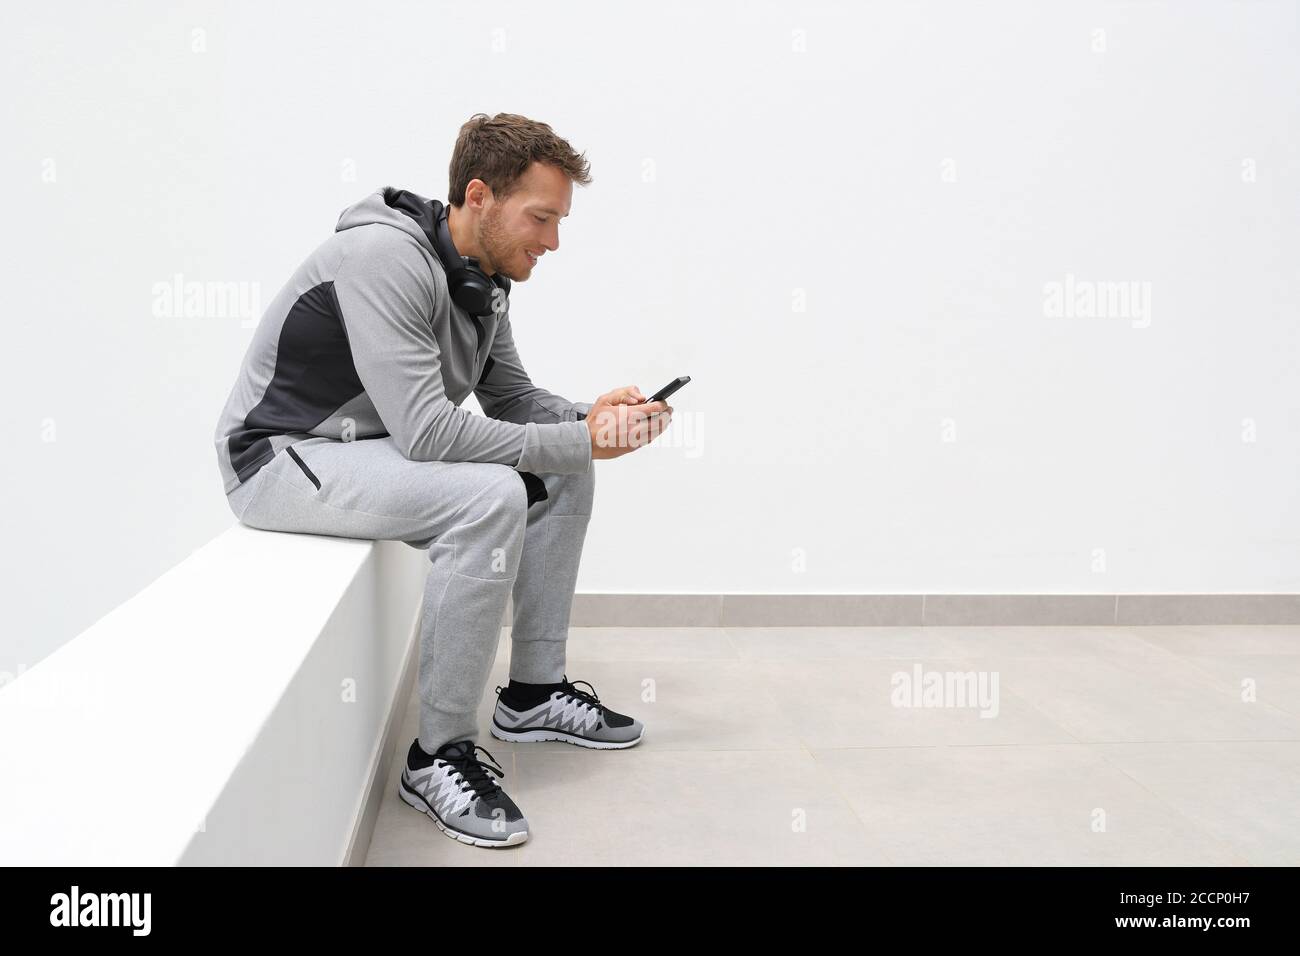 Aktiver Lebensstil junger Mensch hält Smartphone Online-Video ansehen oder SMS-Nachrichten SMS. Fitness-Mann mit Telefon-App auf Jogging Pause entspannen Stockfoto